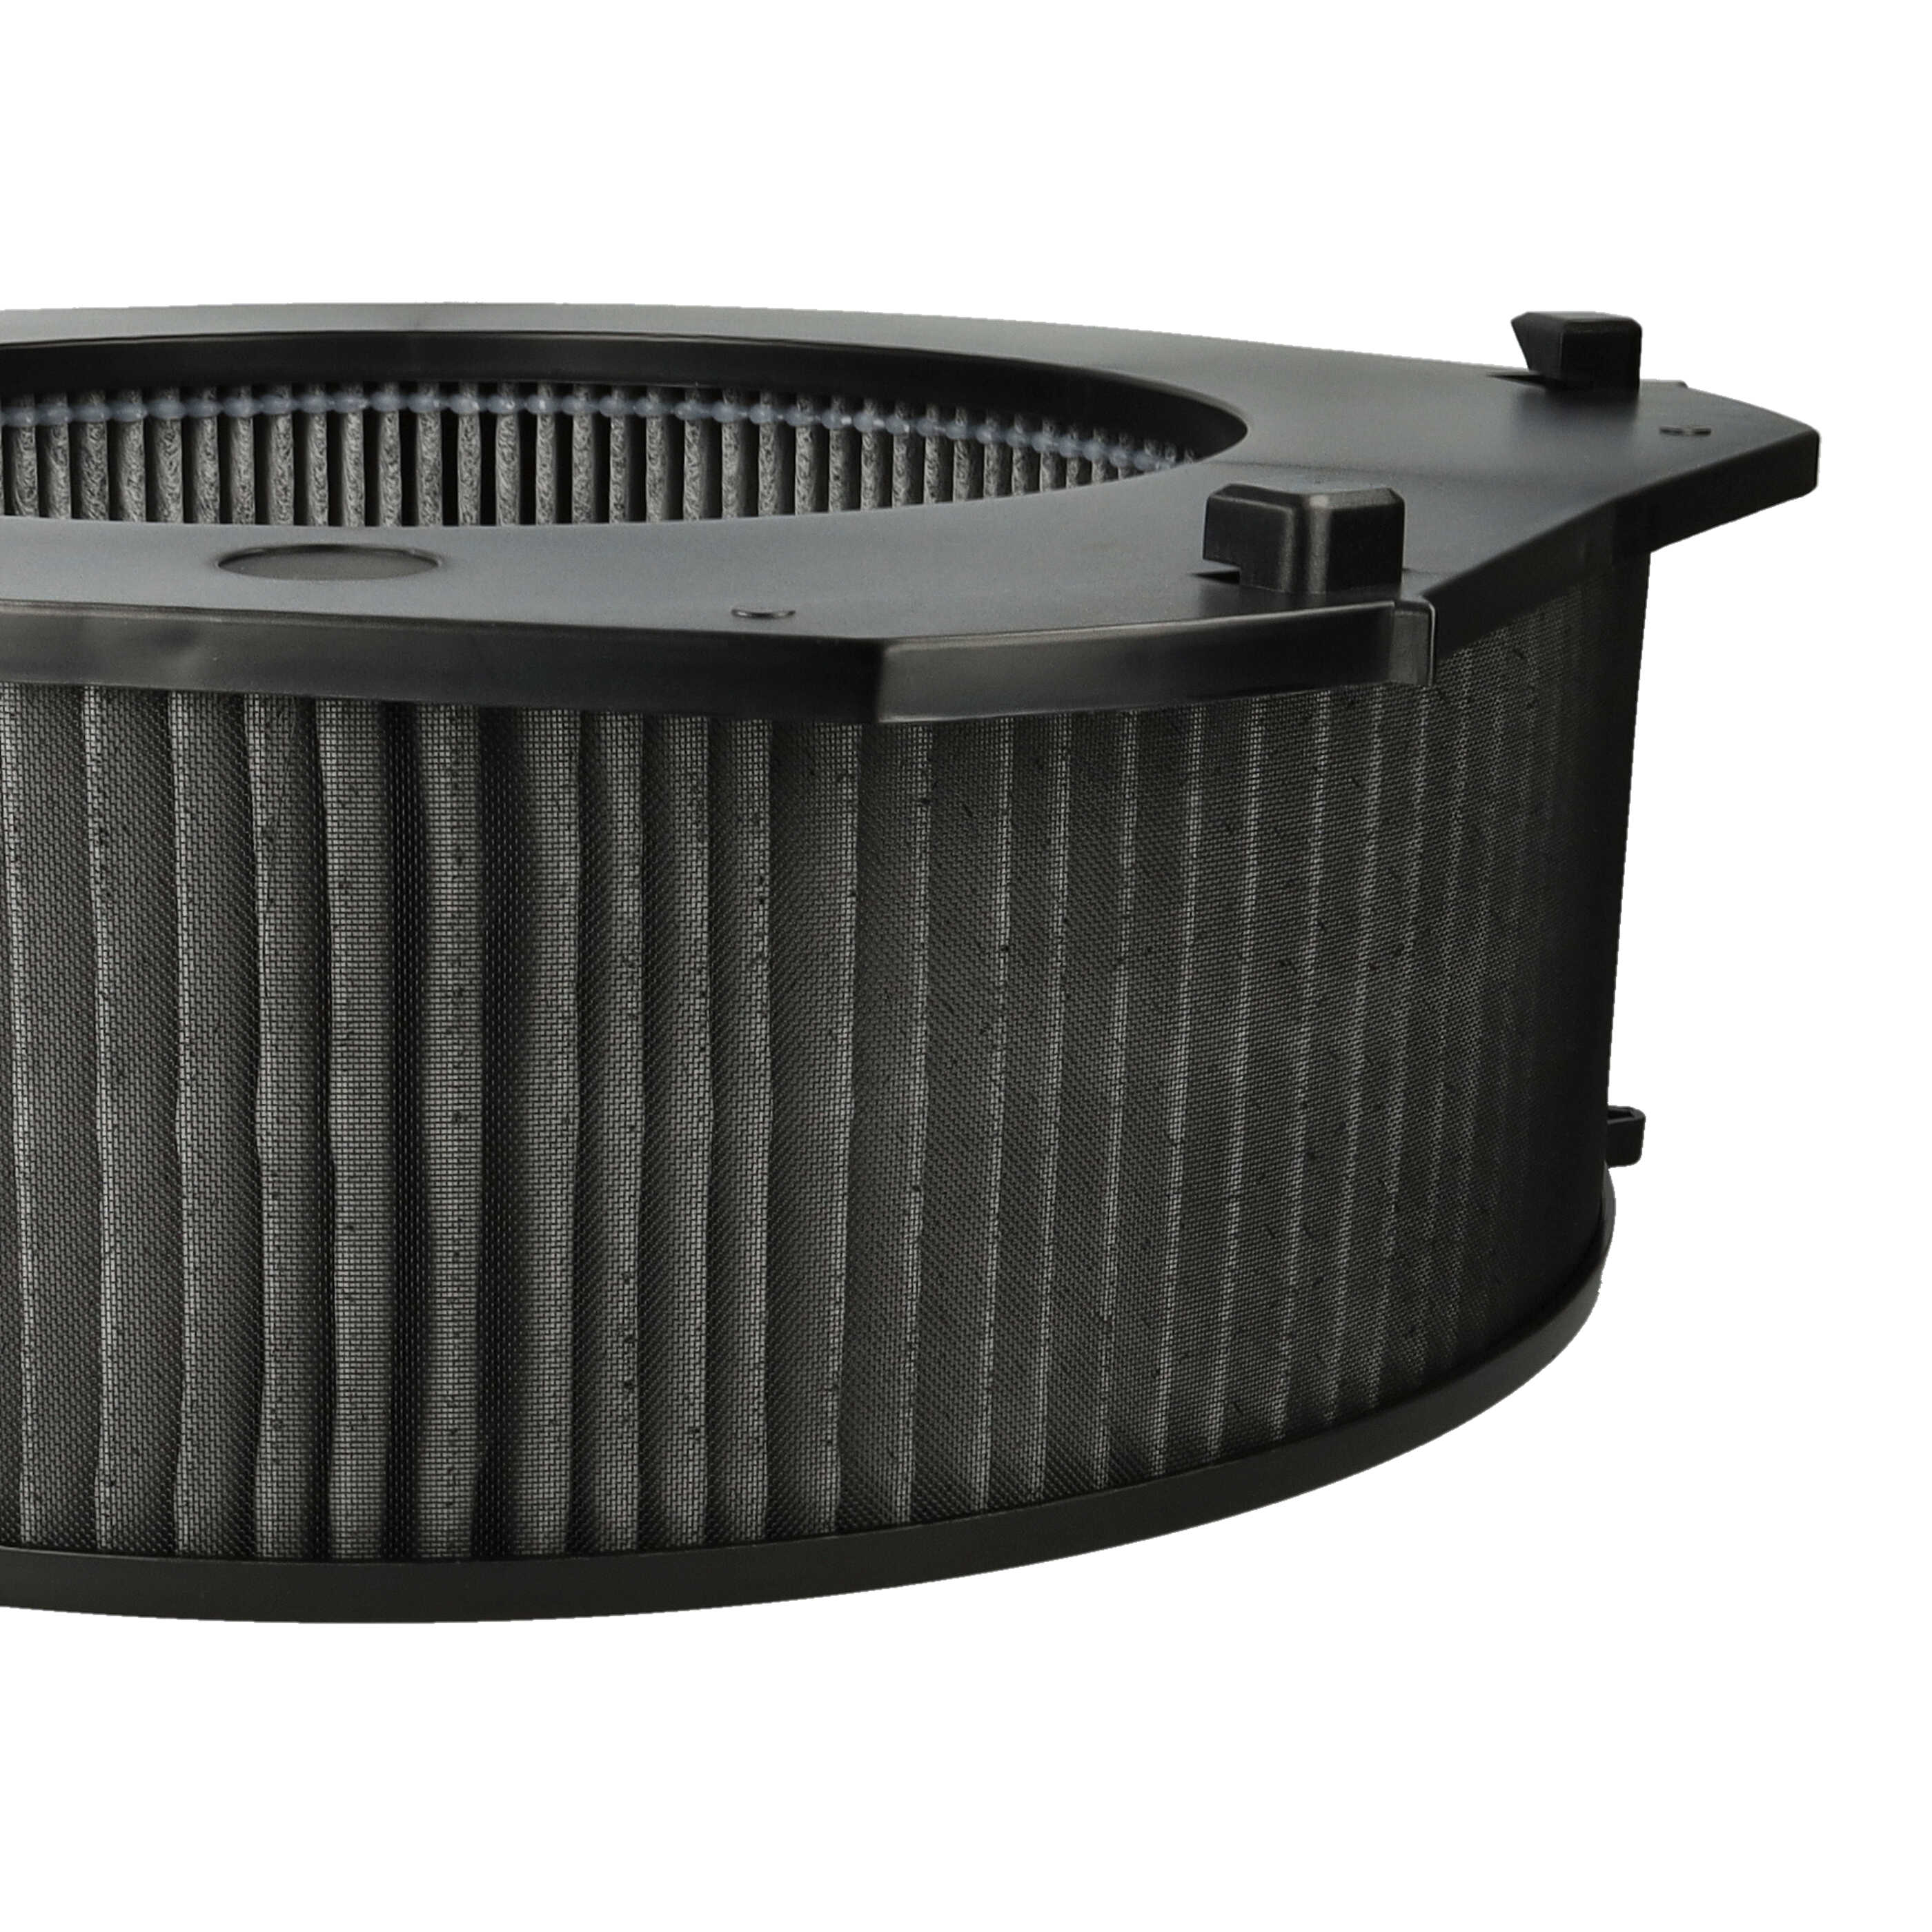 Luftreiniger-Filter (PM10) als Ersatz für Ideal 8741099 - Kombi-Fein-Vorfilter+HEPA+Aktivkohle